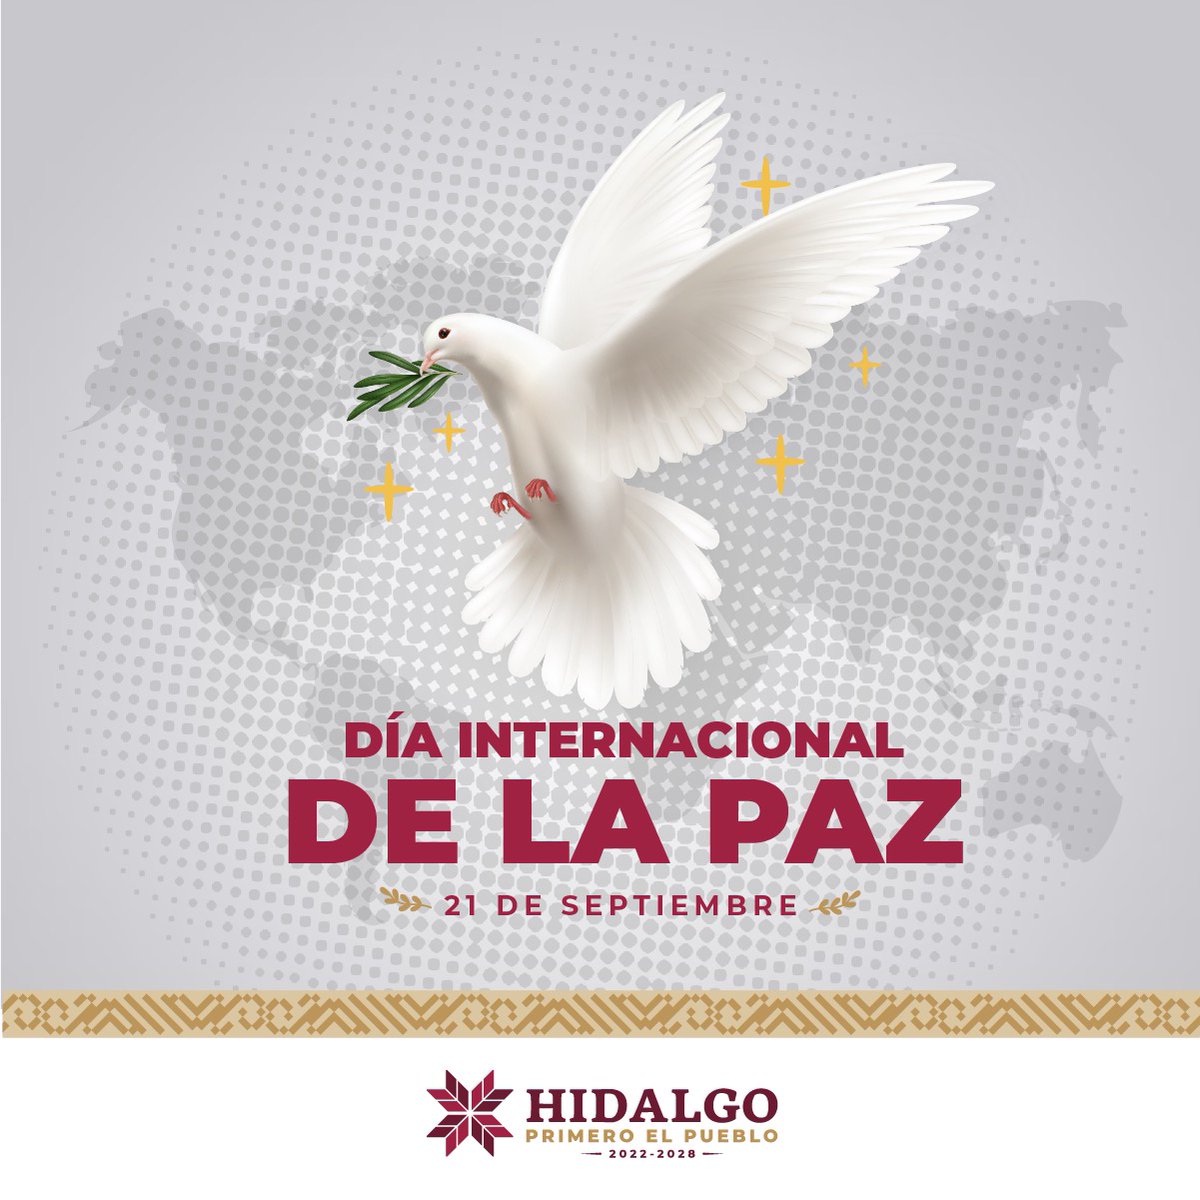 En el #DíaInternacionalDeLaPaz 🕊, reafirmamos nuestro compromiso con un Hidalgo lleno de armonía y convivencia pacífica. La paz no solo es la ausencia de conflictos, sino también la presencia de justicia, igualdad y solidaridad. #PrimeroElPueblo